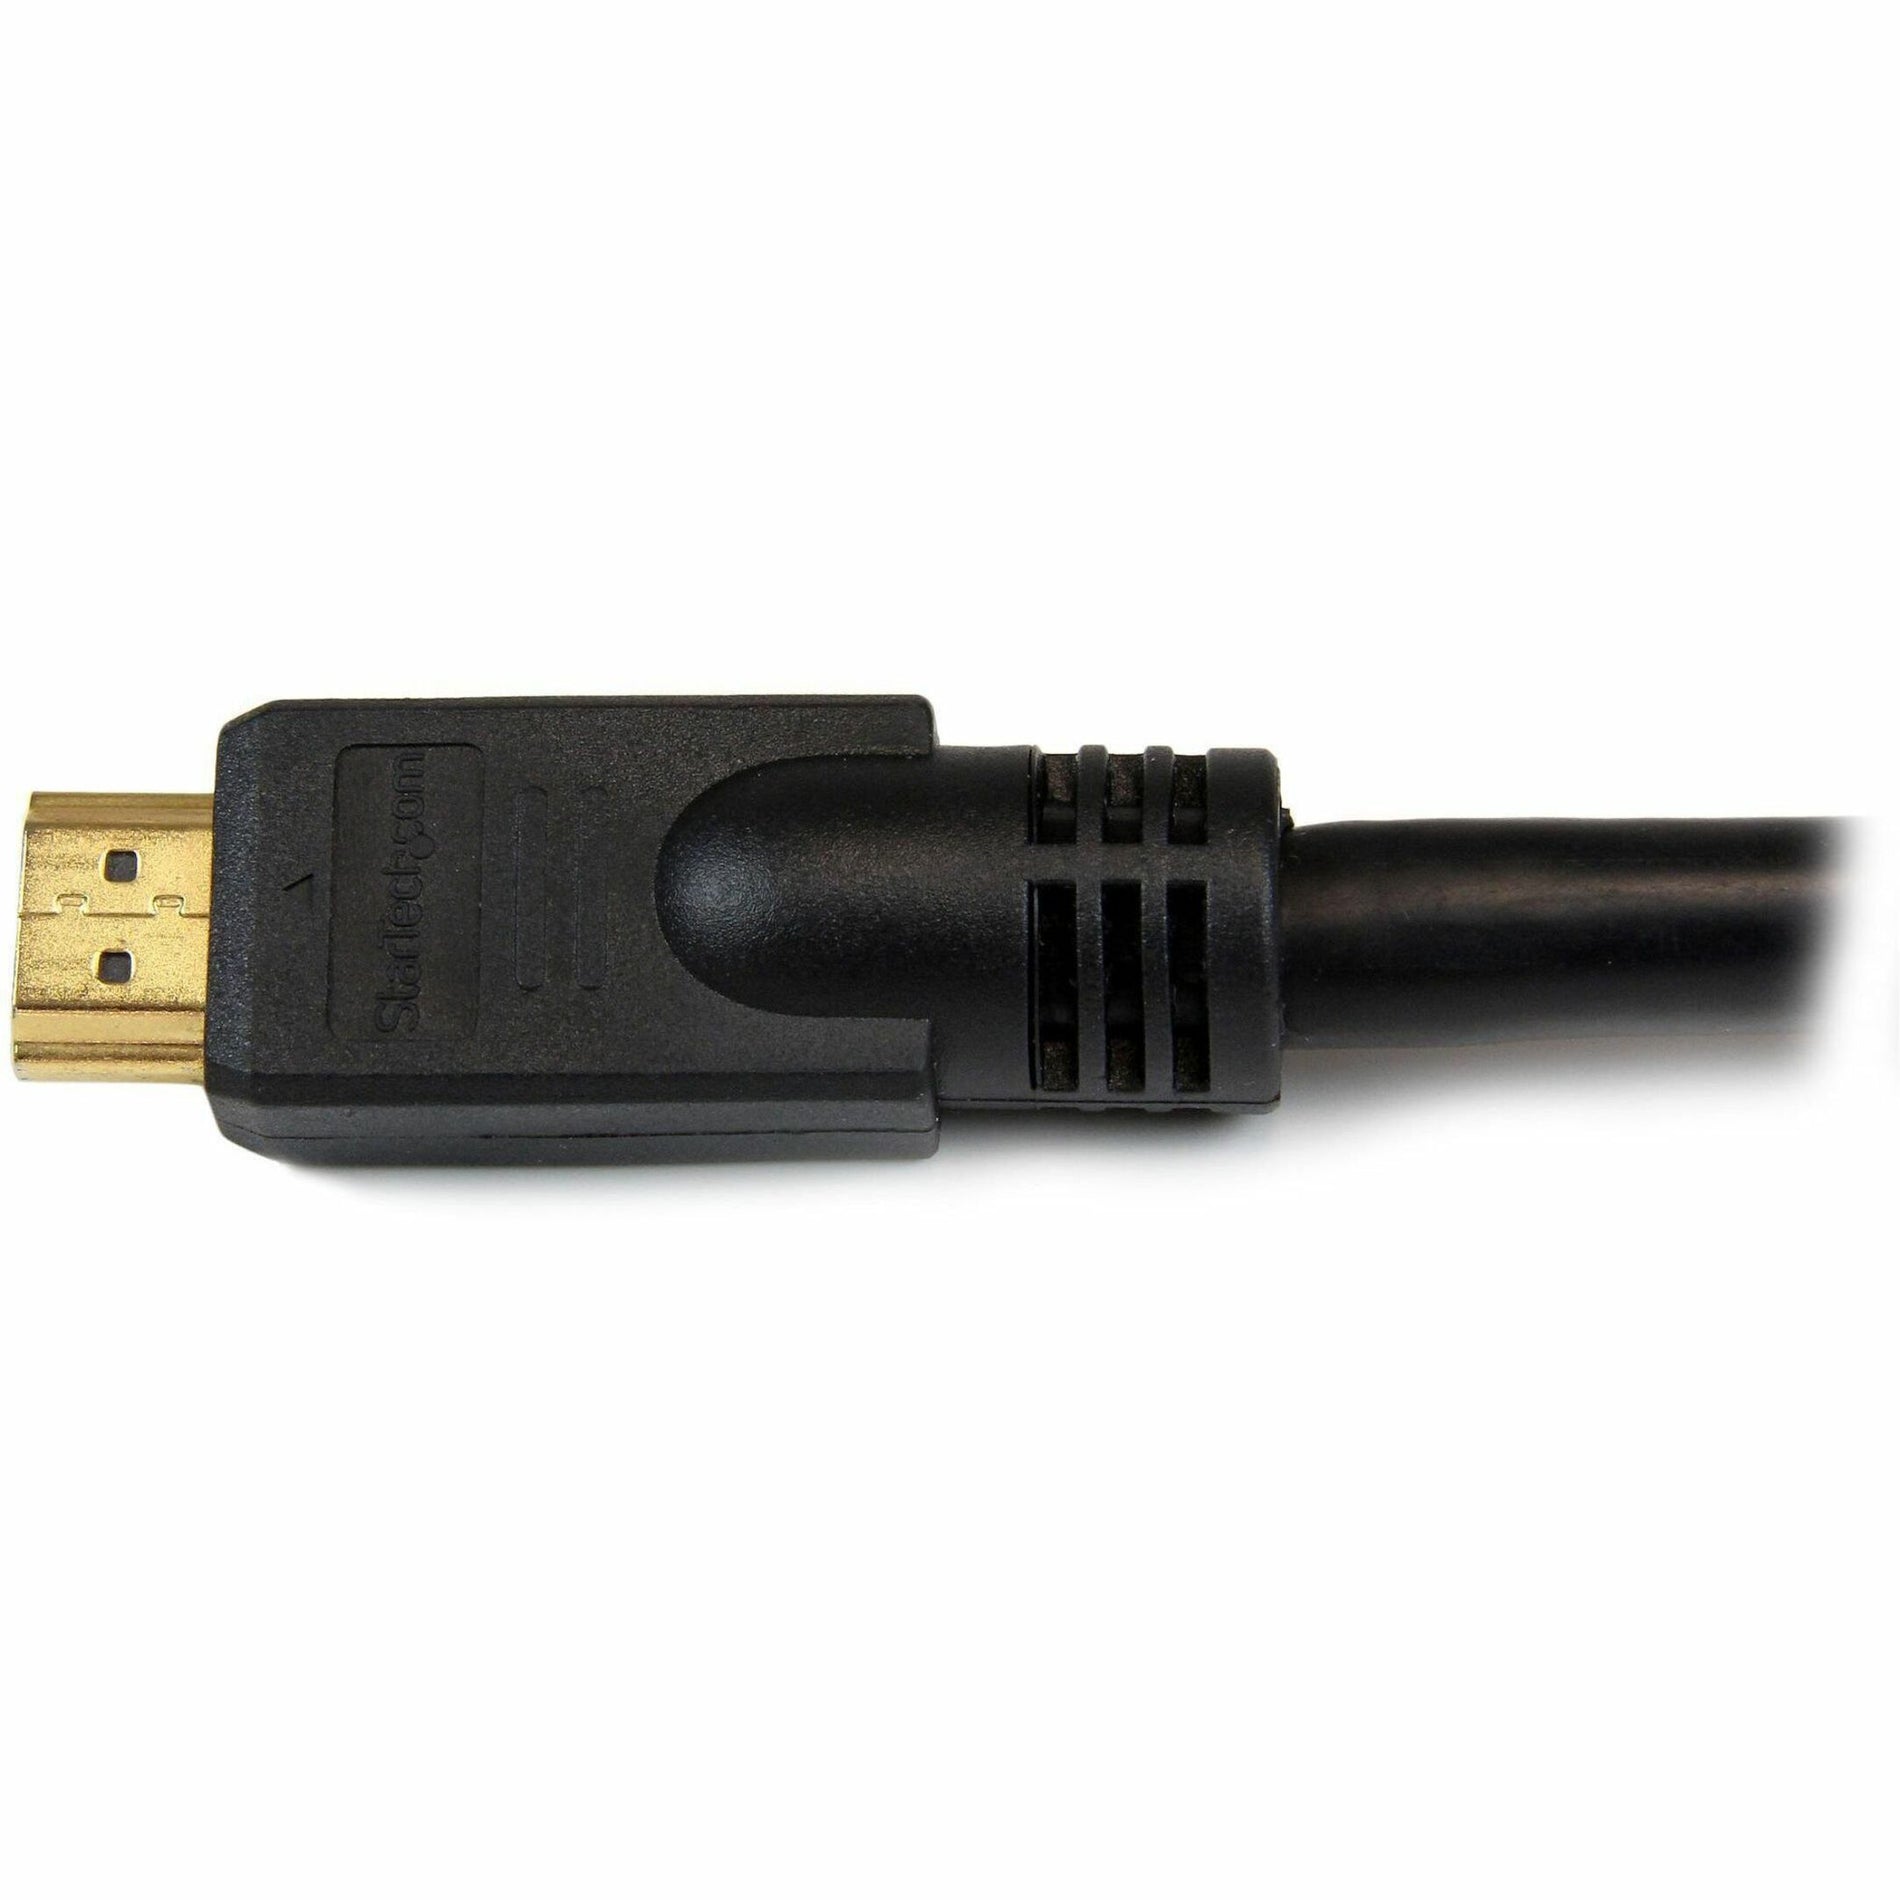 كابل HDMI عالي السرعة بطول 30 قدم - كابل HDMI Ultra HD 4k x 2k ، تخفيف الضغط ، خالٍ من التآكل ، مصبوب ، موصلات مطلية بالذهب ، أسود StarTech.com ستارتيك.كوم